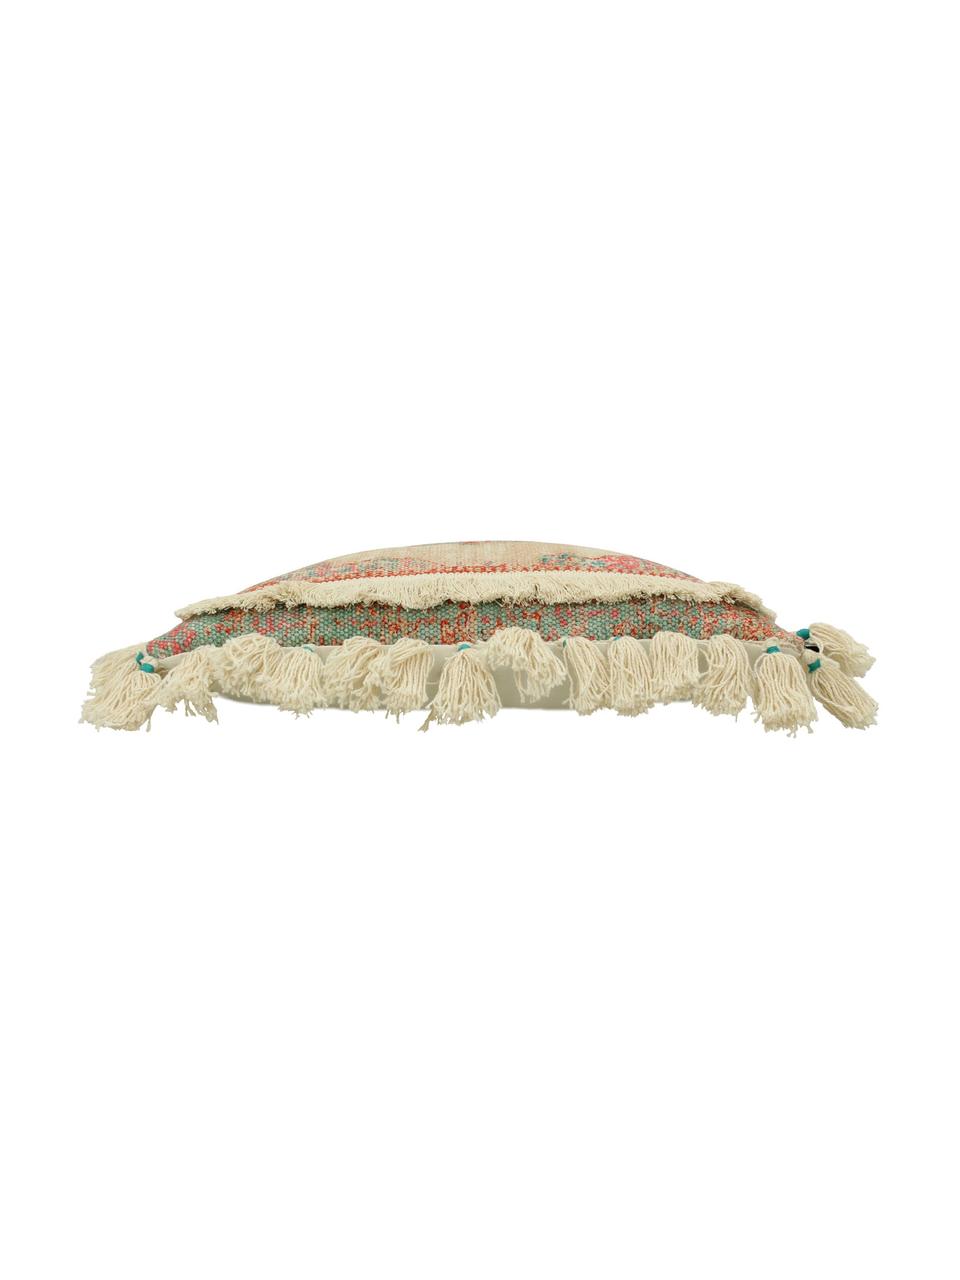 Cuscino con nappe e imbottitura Latina, Beige, multicolore, Larg. 45 x Lung. 45 cm